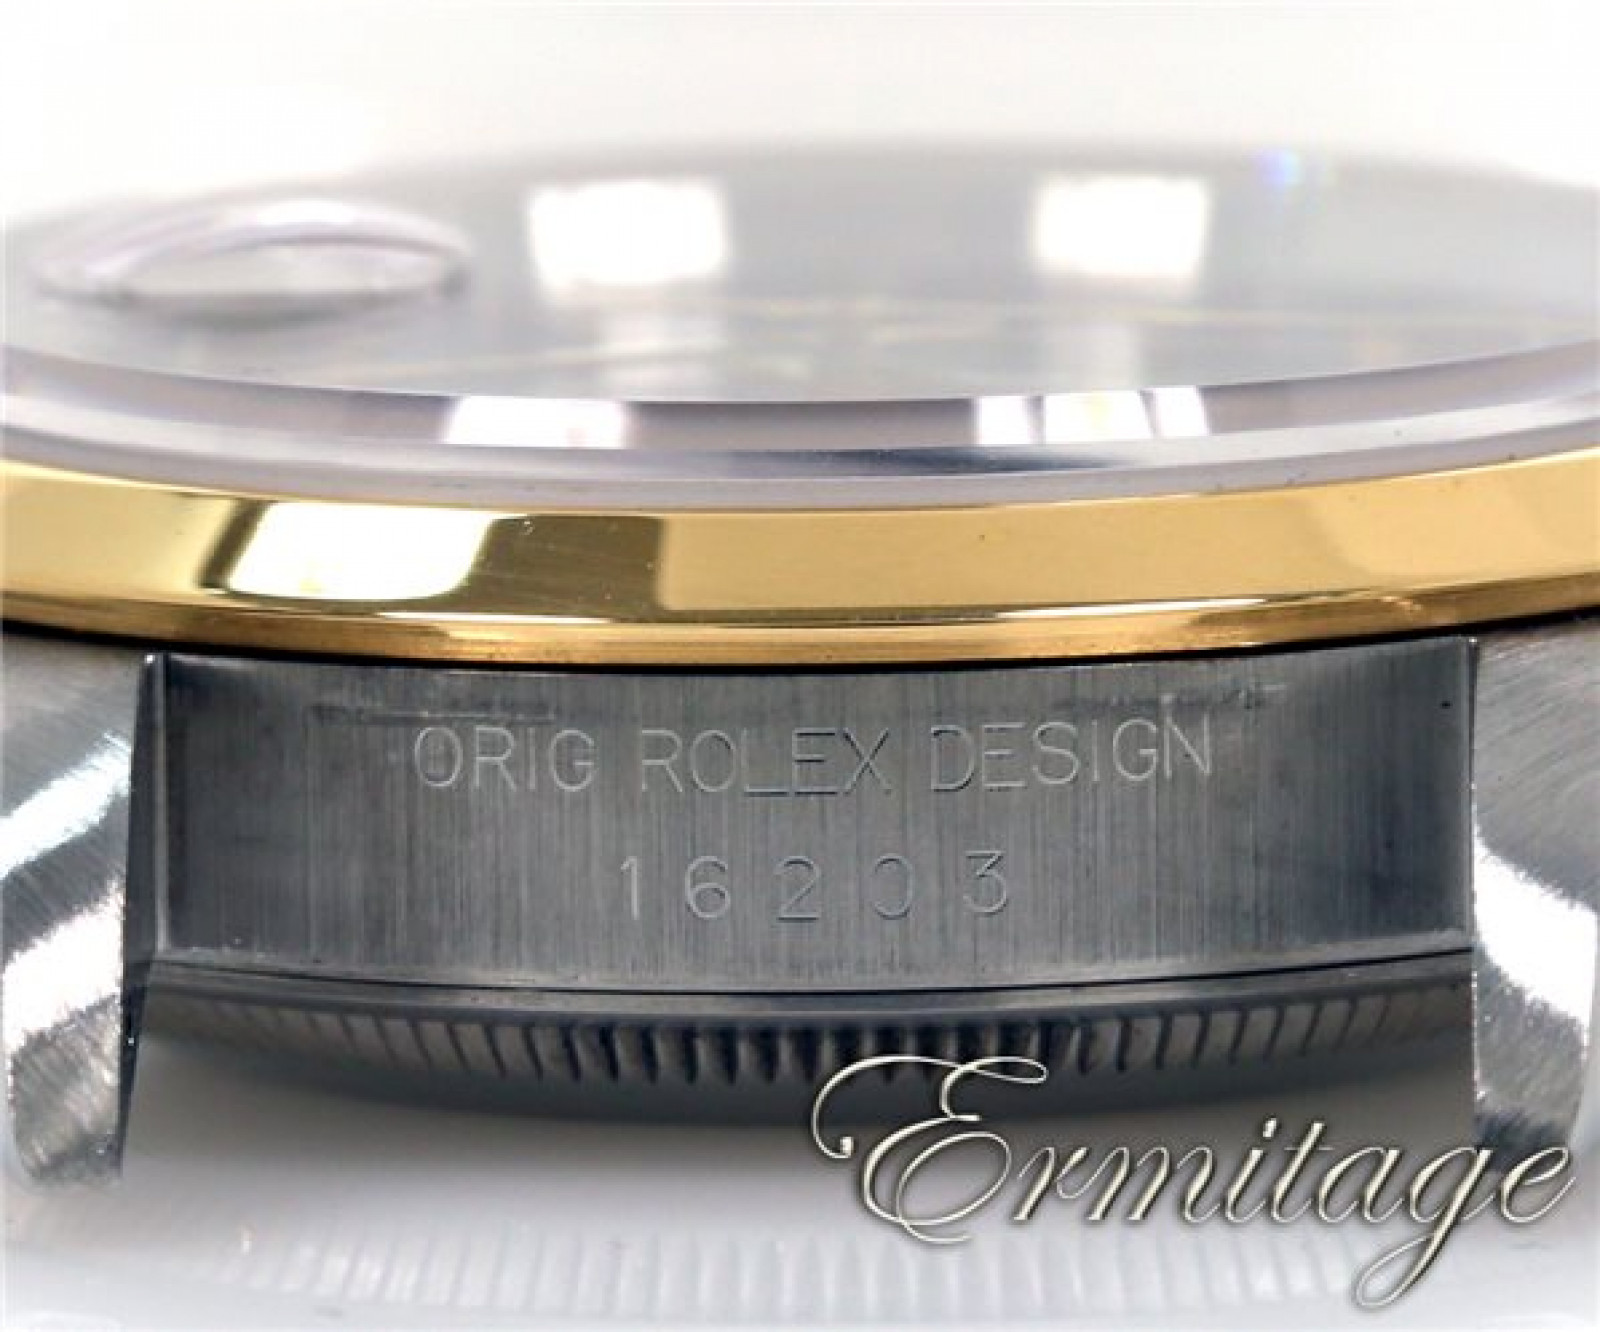 Rolex Datejust 16203 Gold & Steel 1995